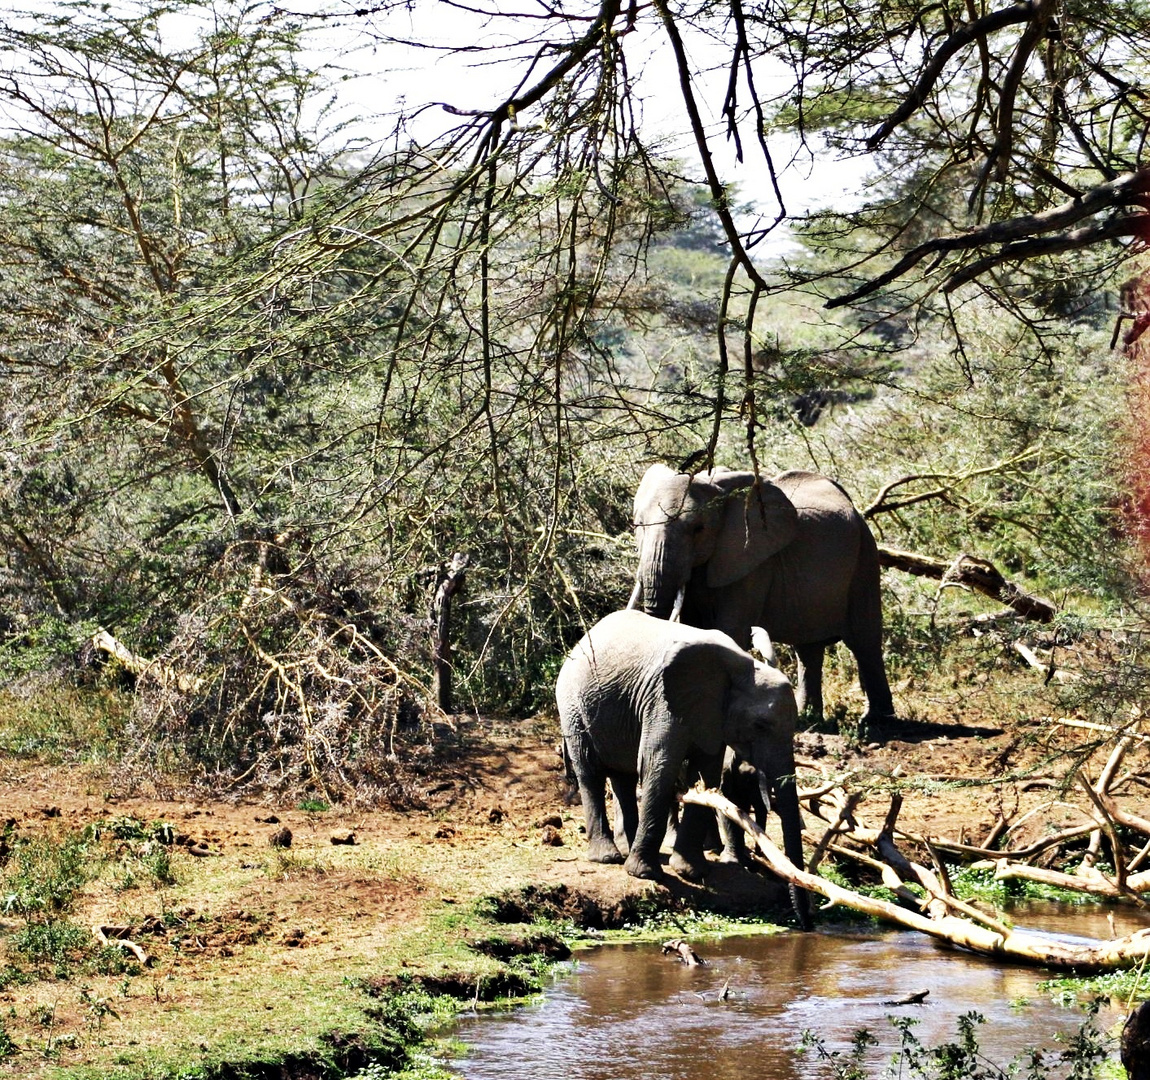 Wasser ist nötig, Kenia 2005